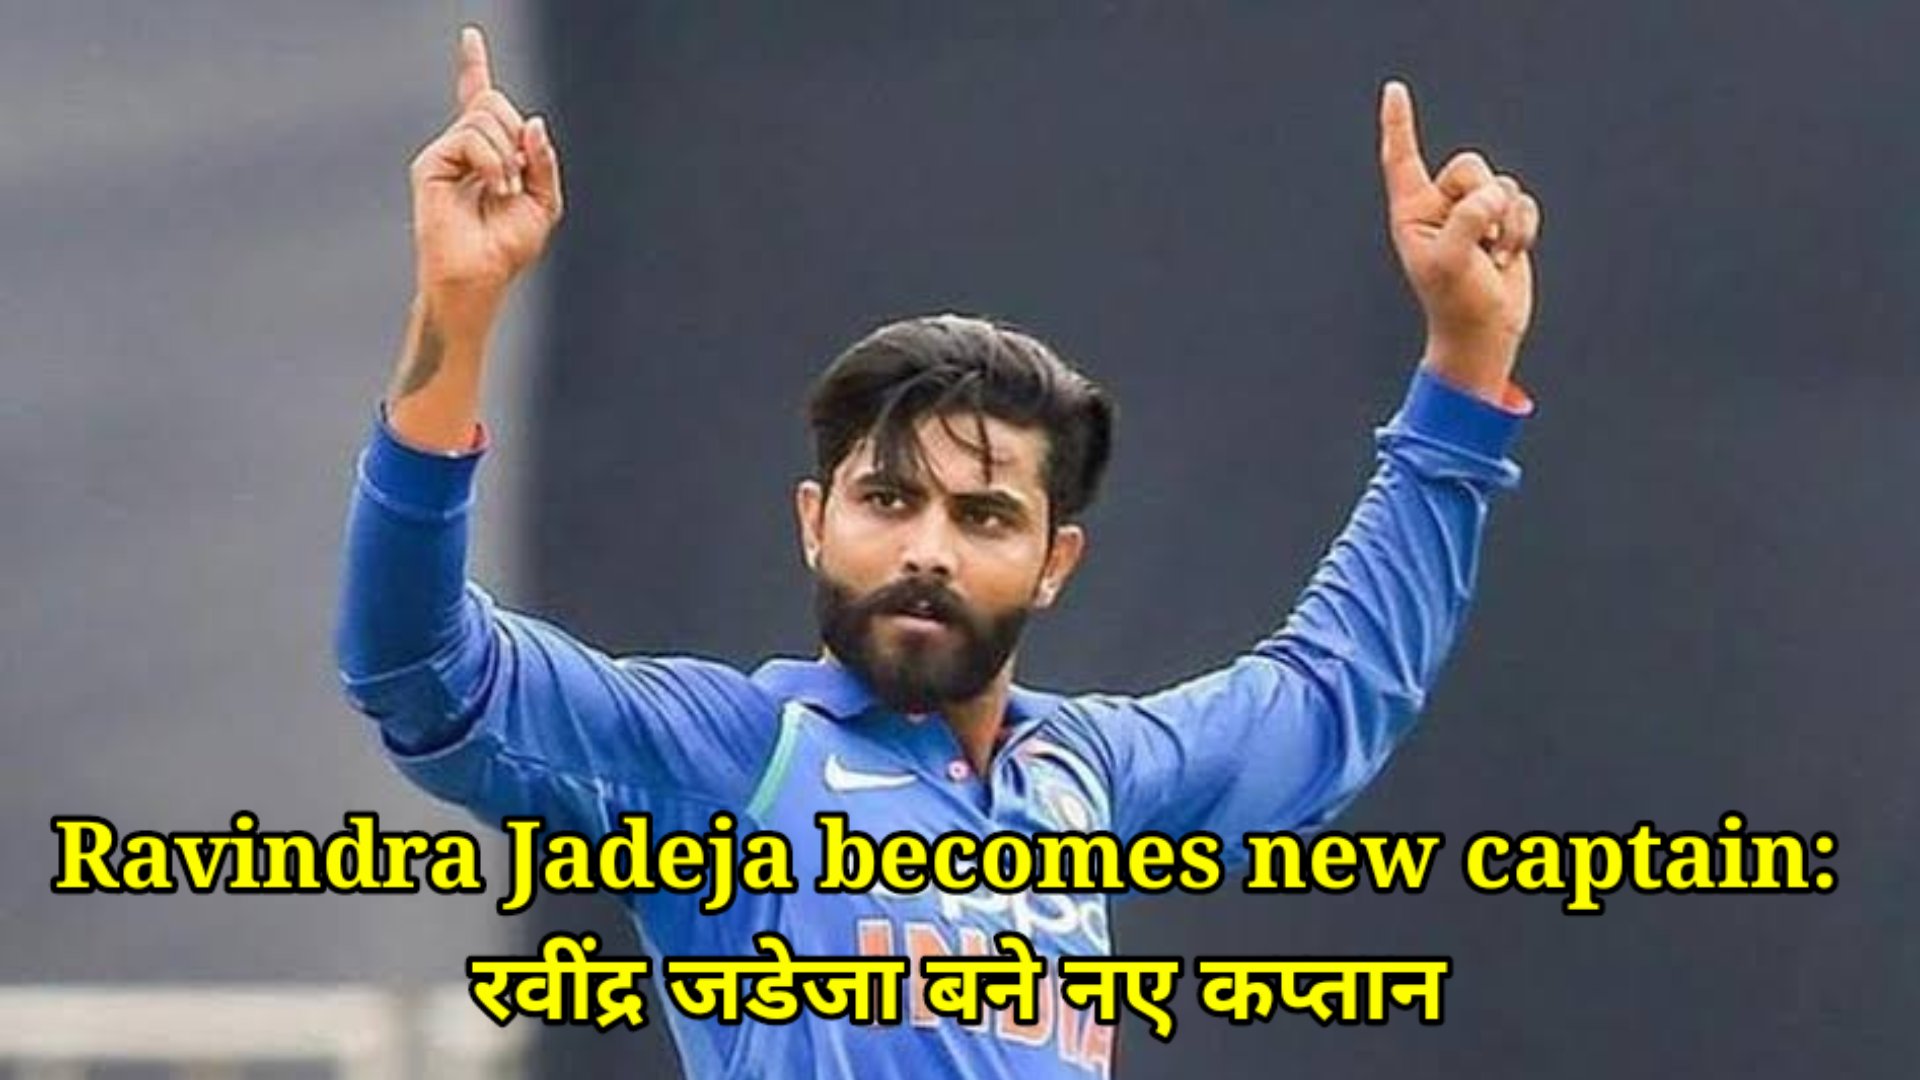 Ravindra Jadeja becomes new captain: रवींद्र जडेजा बने नए कप्तान, ऑस्ट्रेलिया के खिलाफ सीरीज से पहले स्टार ऑलराउंडर की तगड़ी वापसी